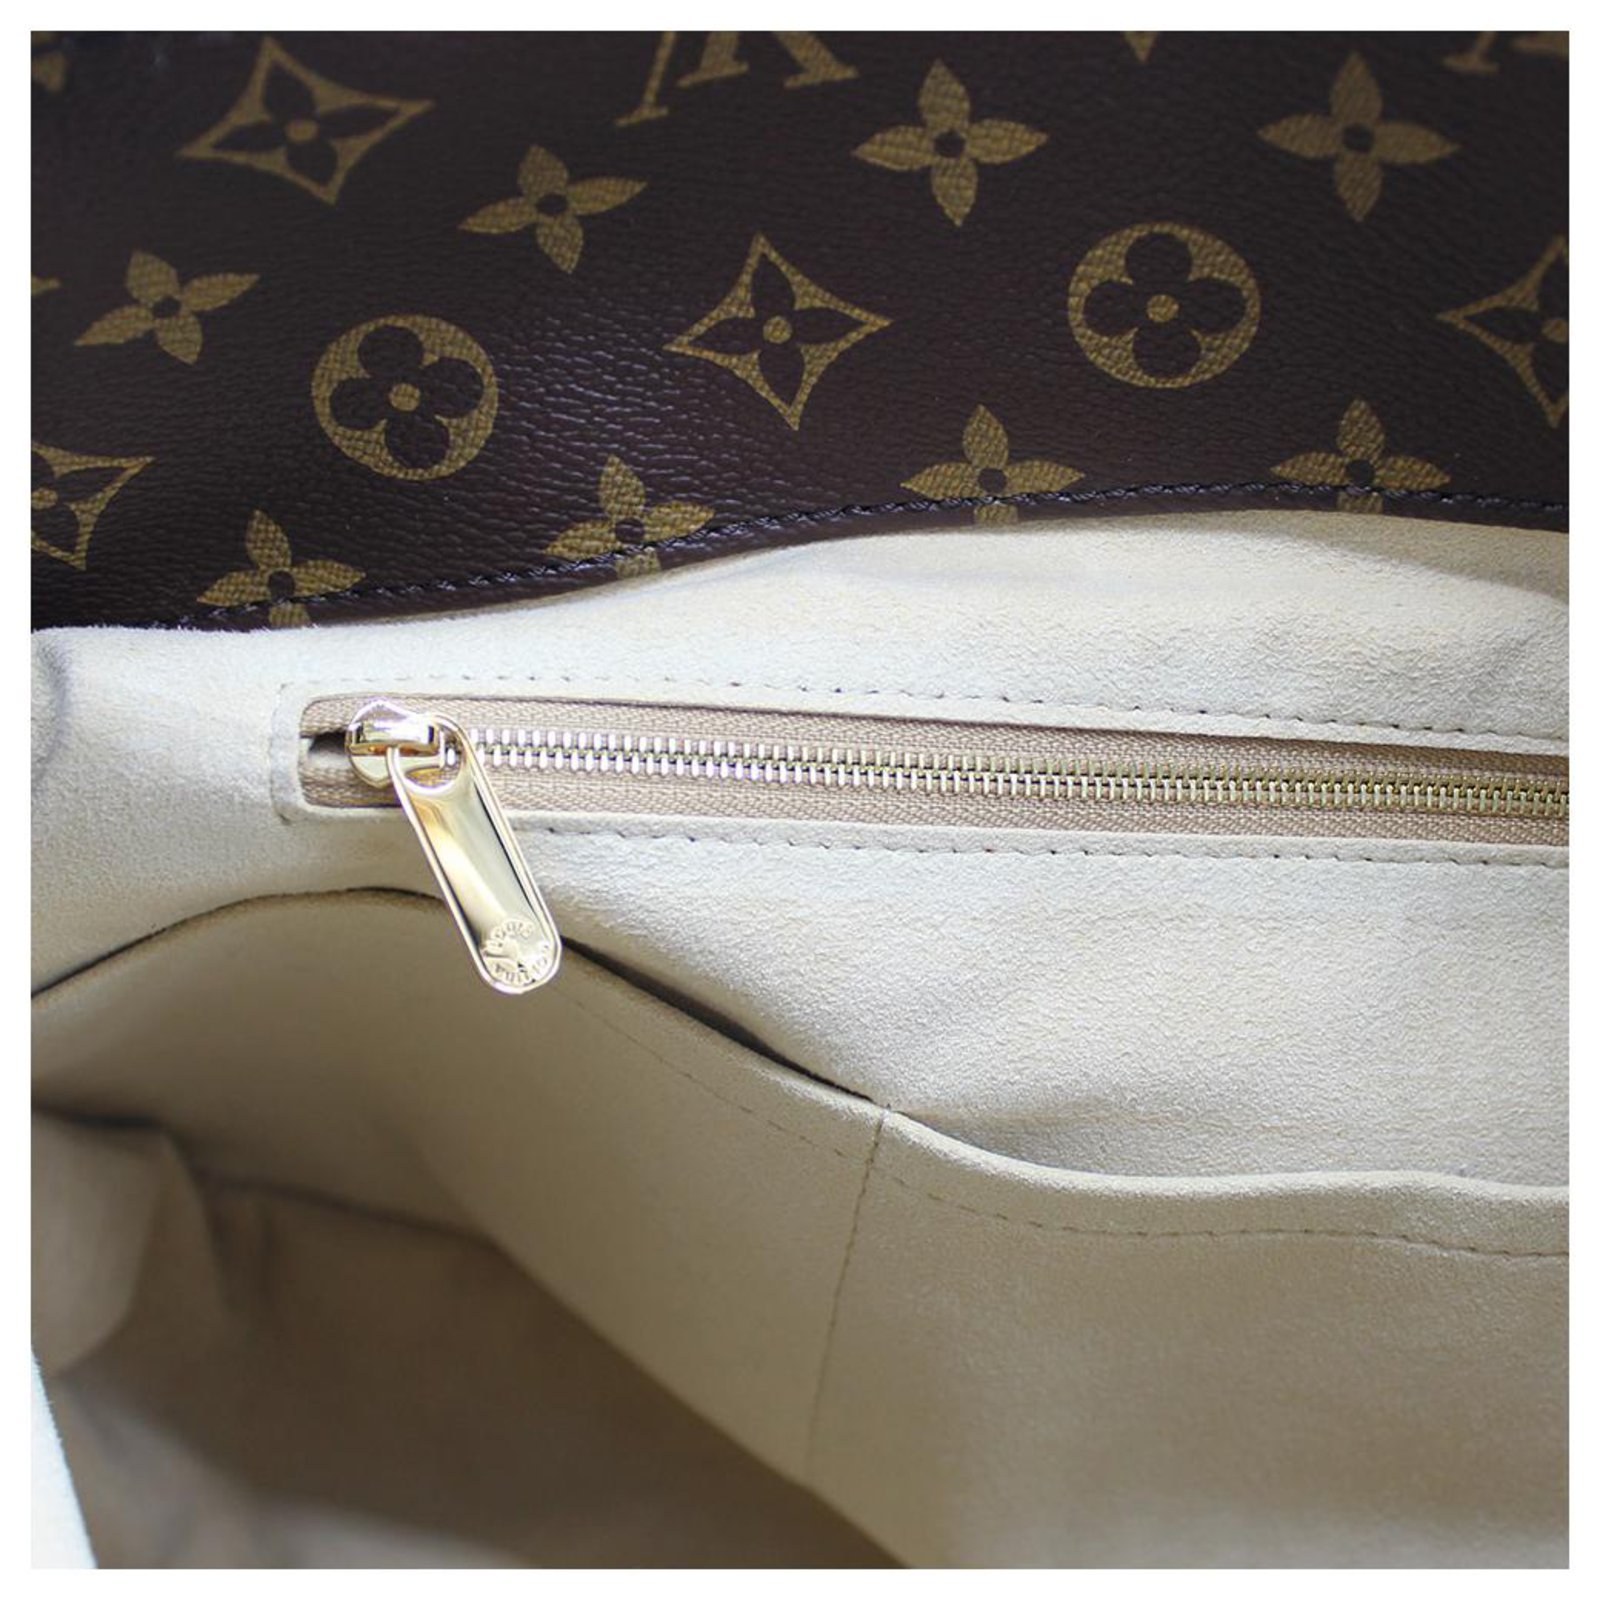 Artsy cloth handbag Louis Vuitton Beige in Cloth - 34276430